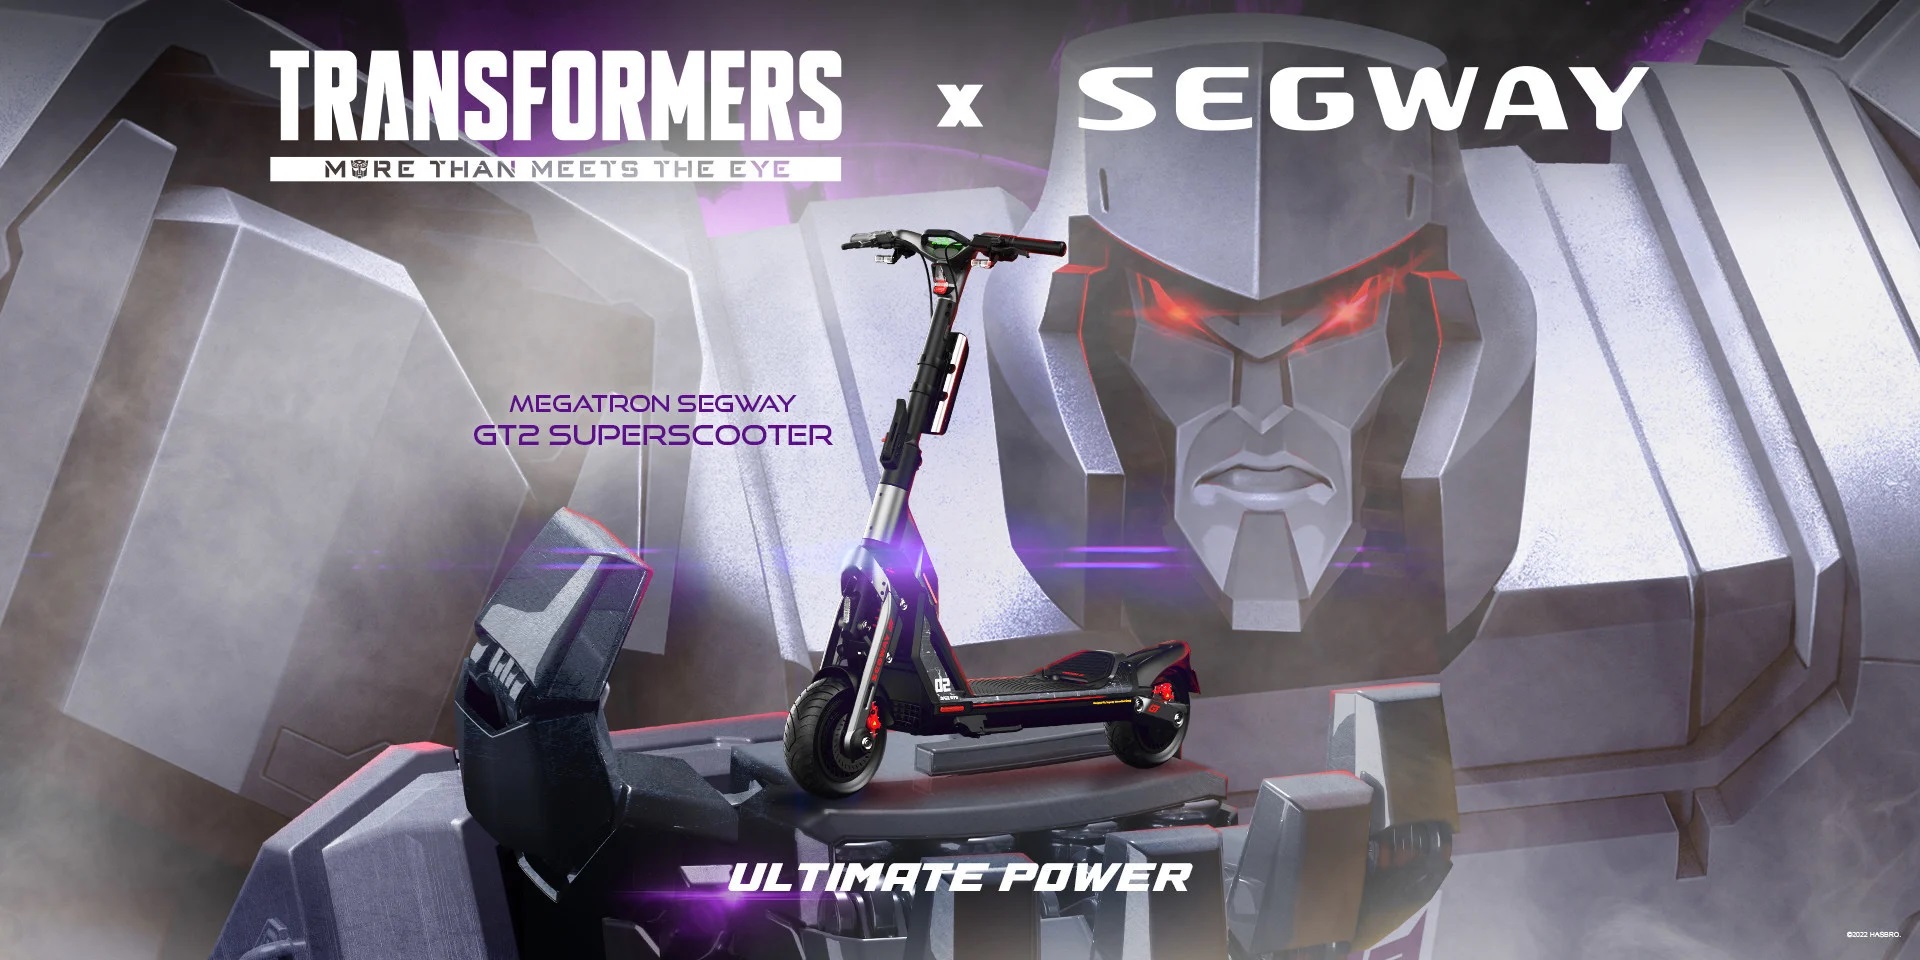 Segway-Ninebot e Hasbro hanno realizzato un'edizione limitata di kart e scooter elettrici in onore dei Transformers.